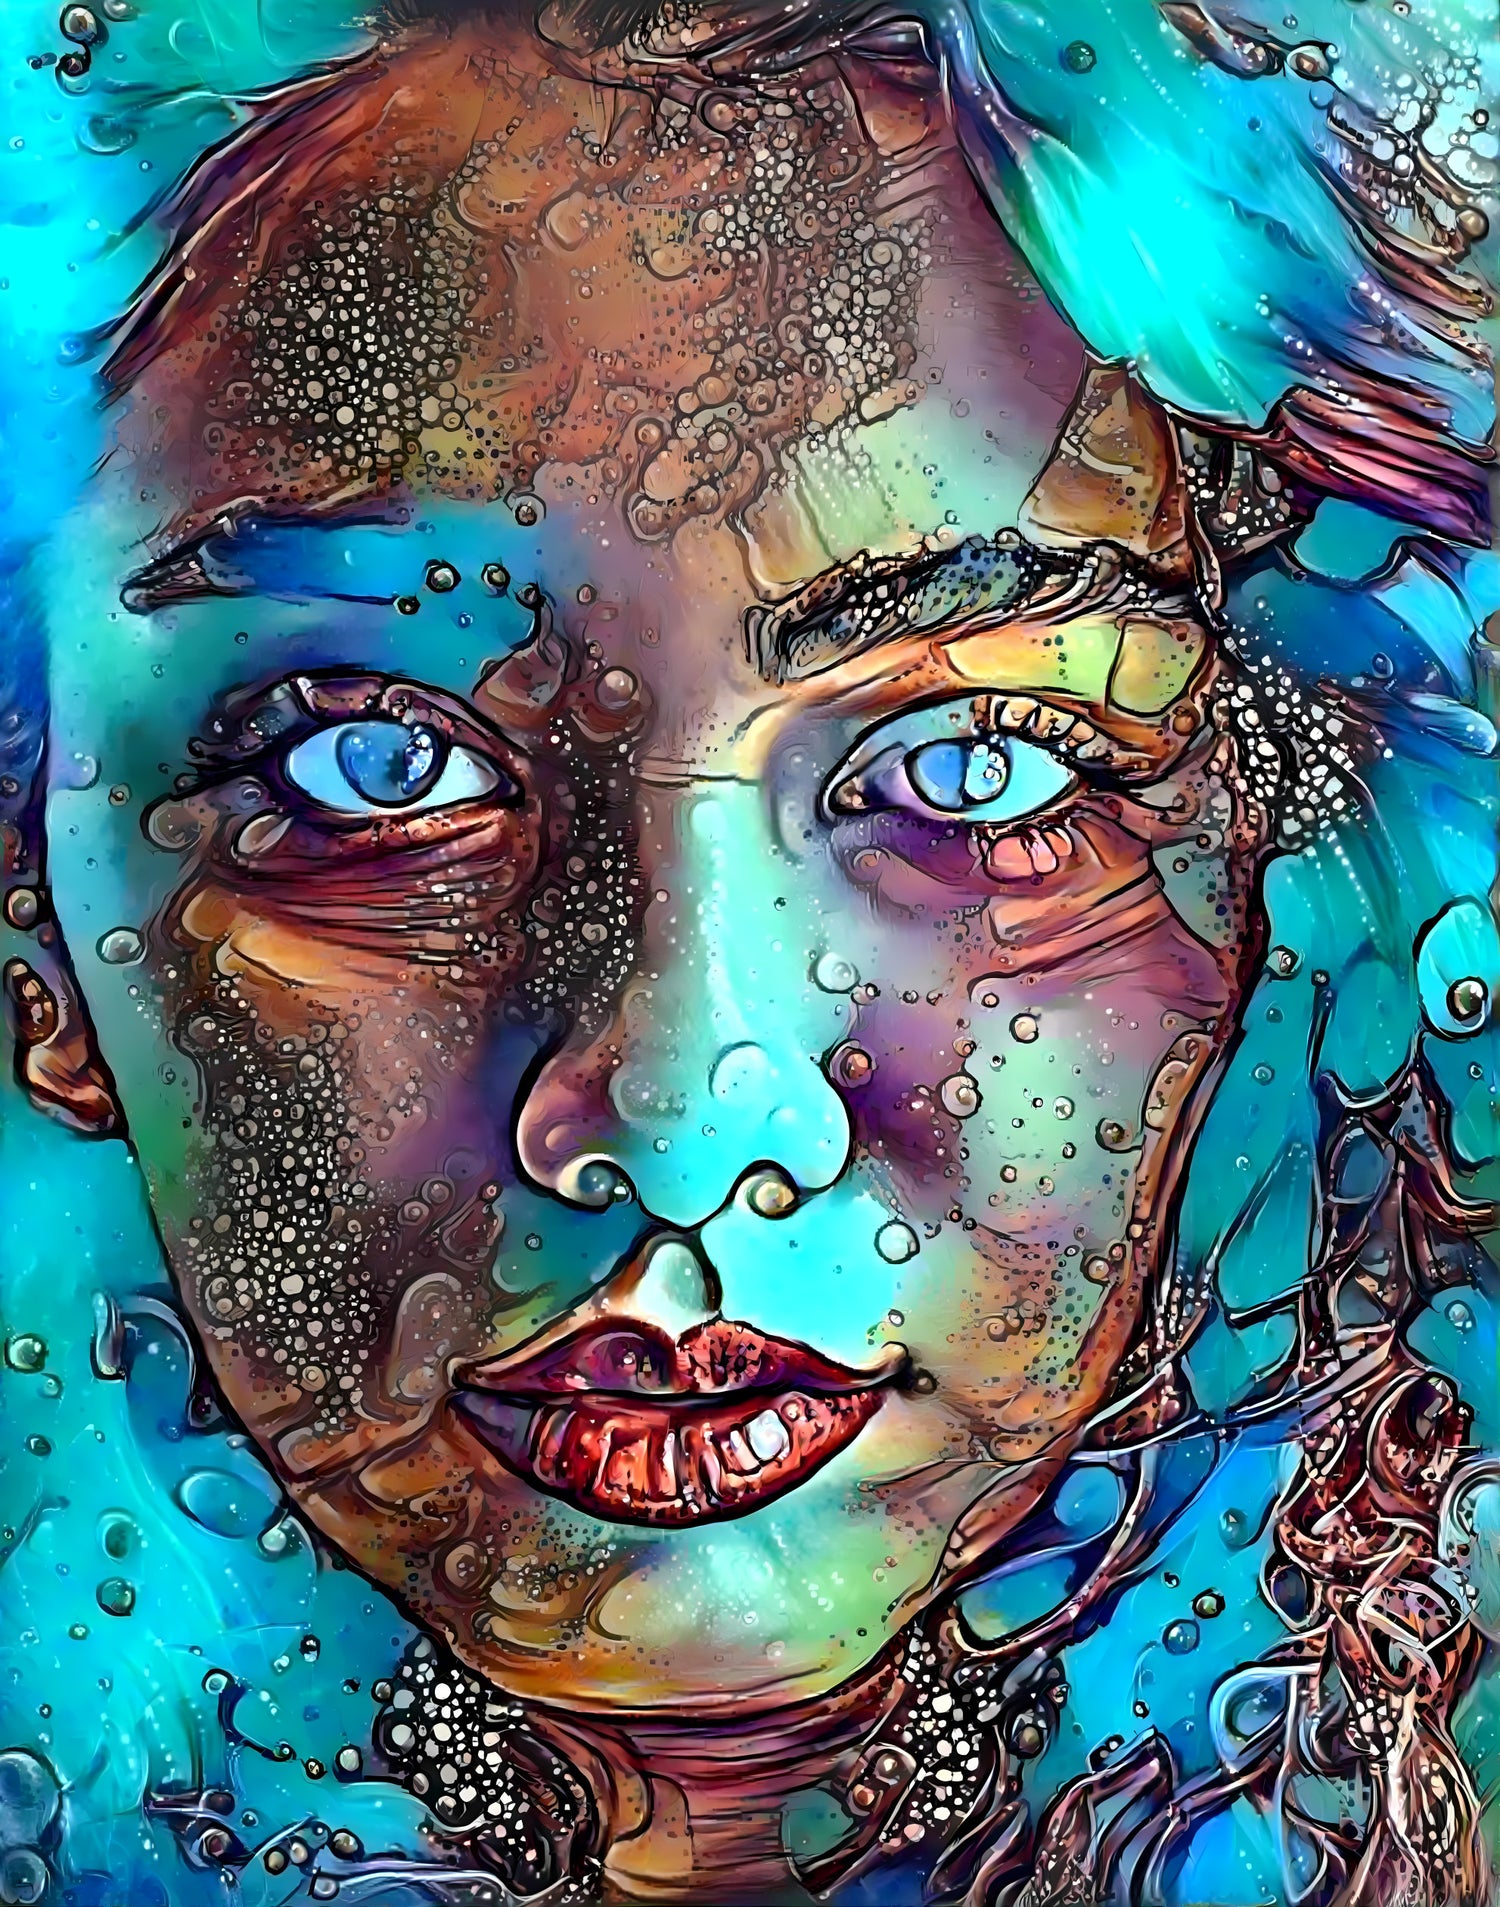 The Aquatic Woman Artwork